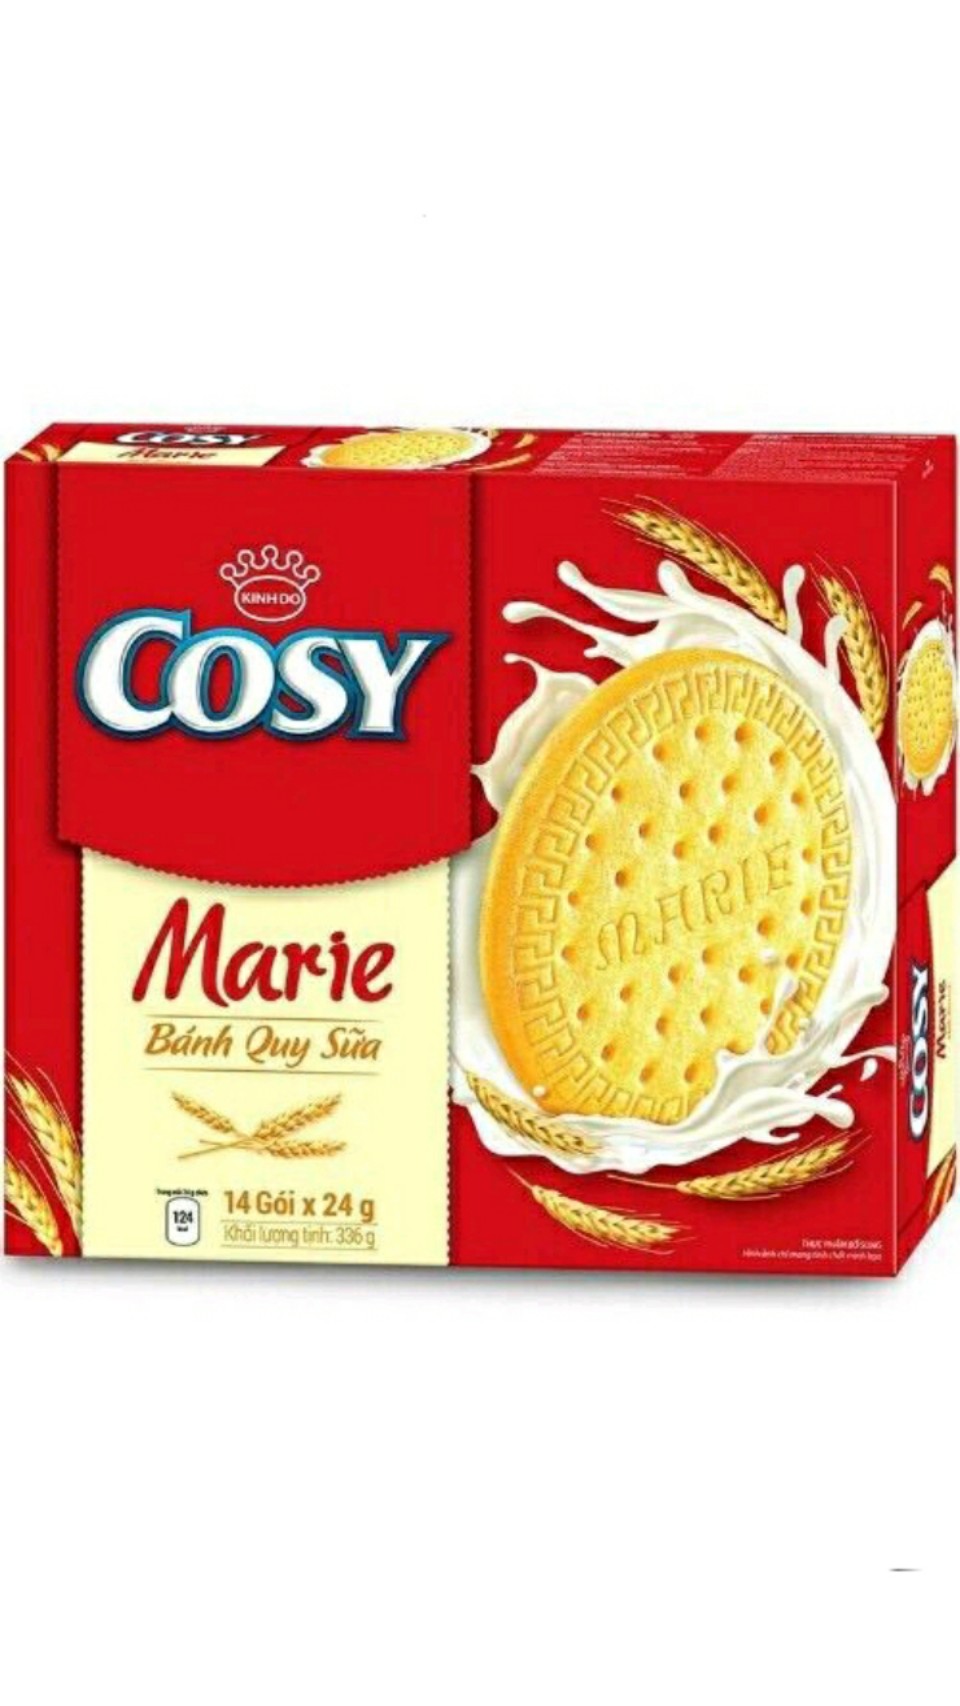 Bánh quy sữa COSY Marie hộp giấy 336g